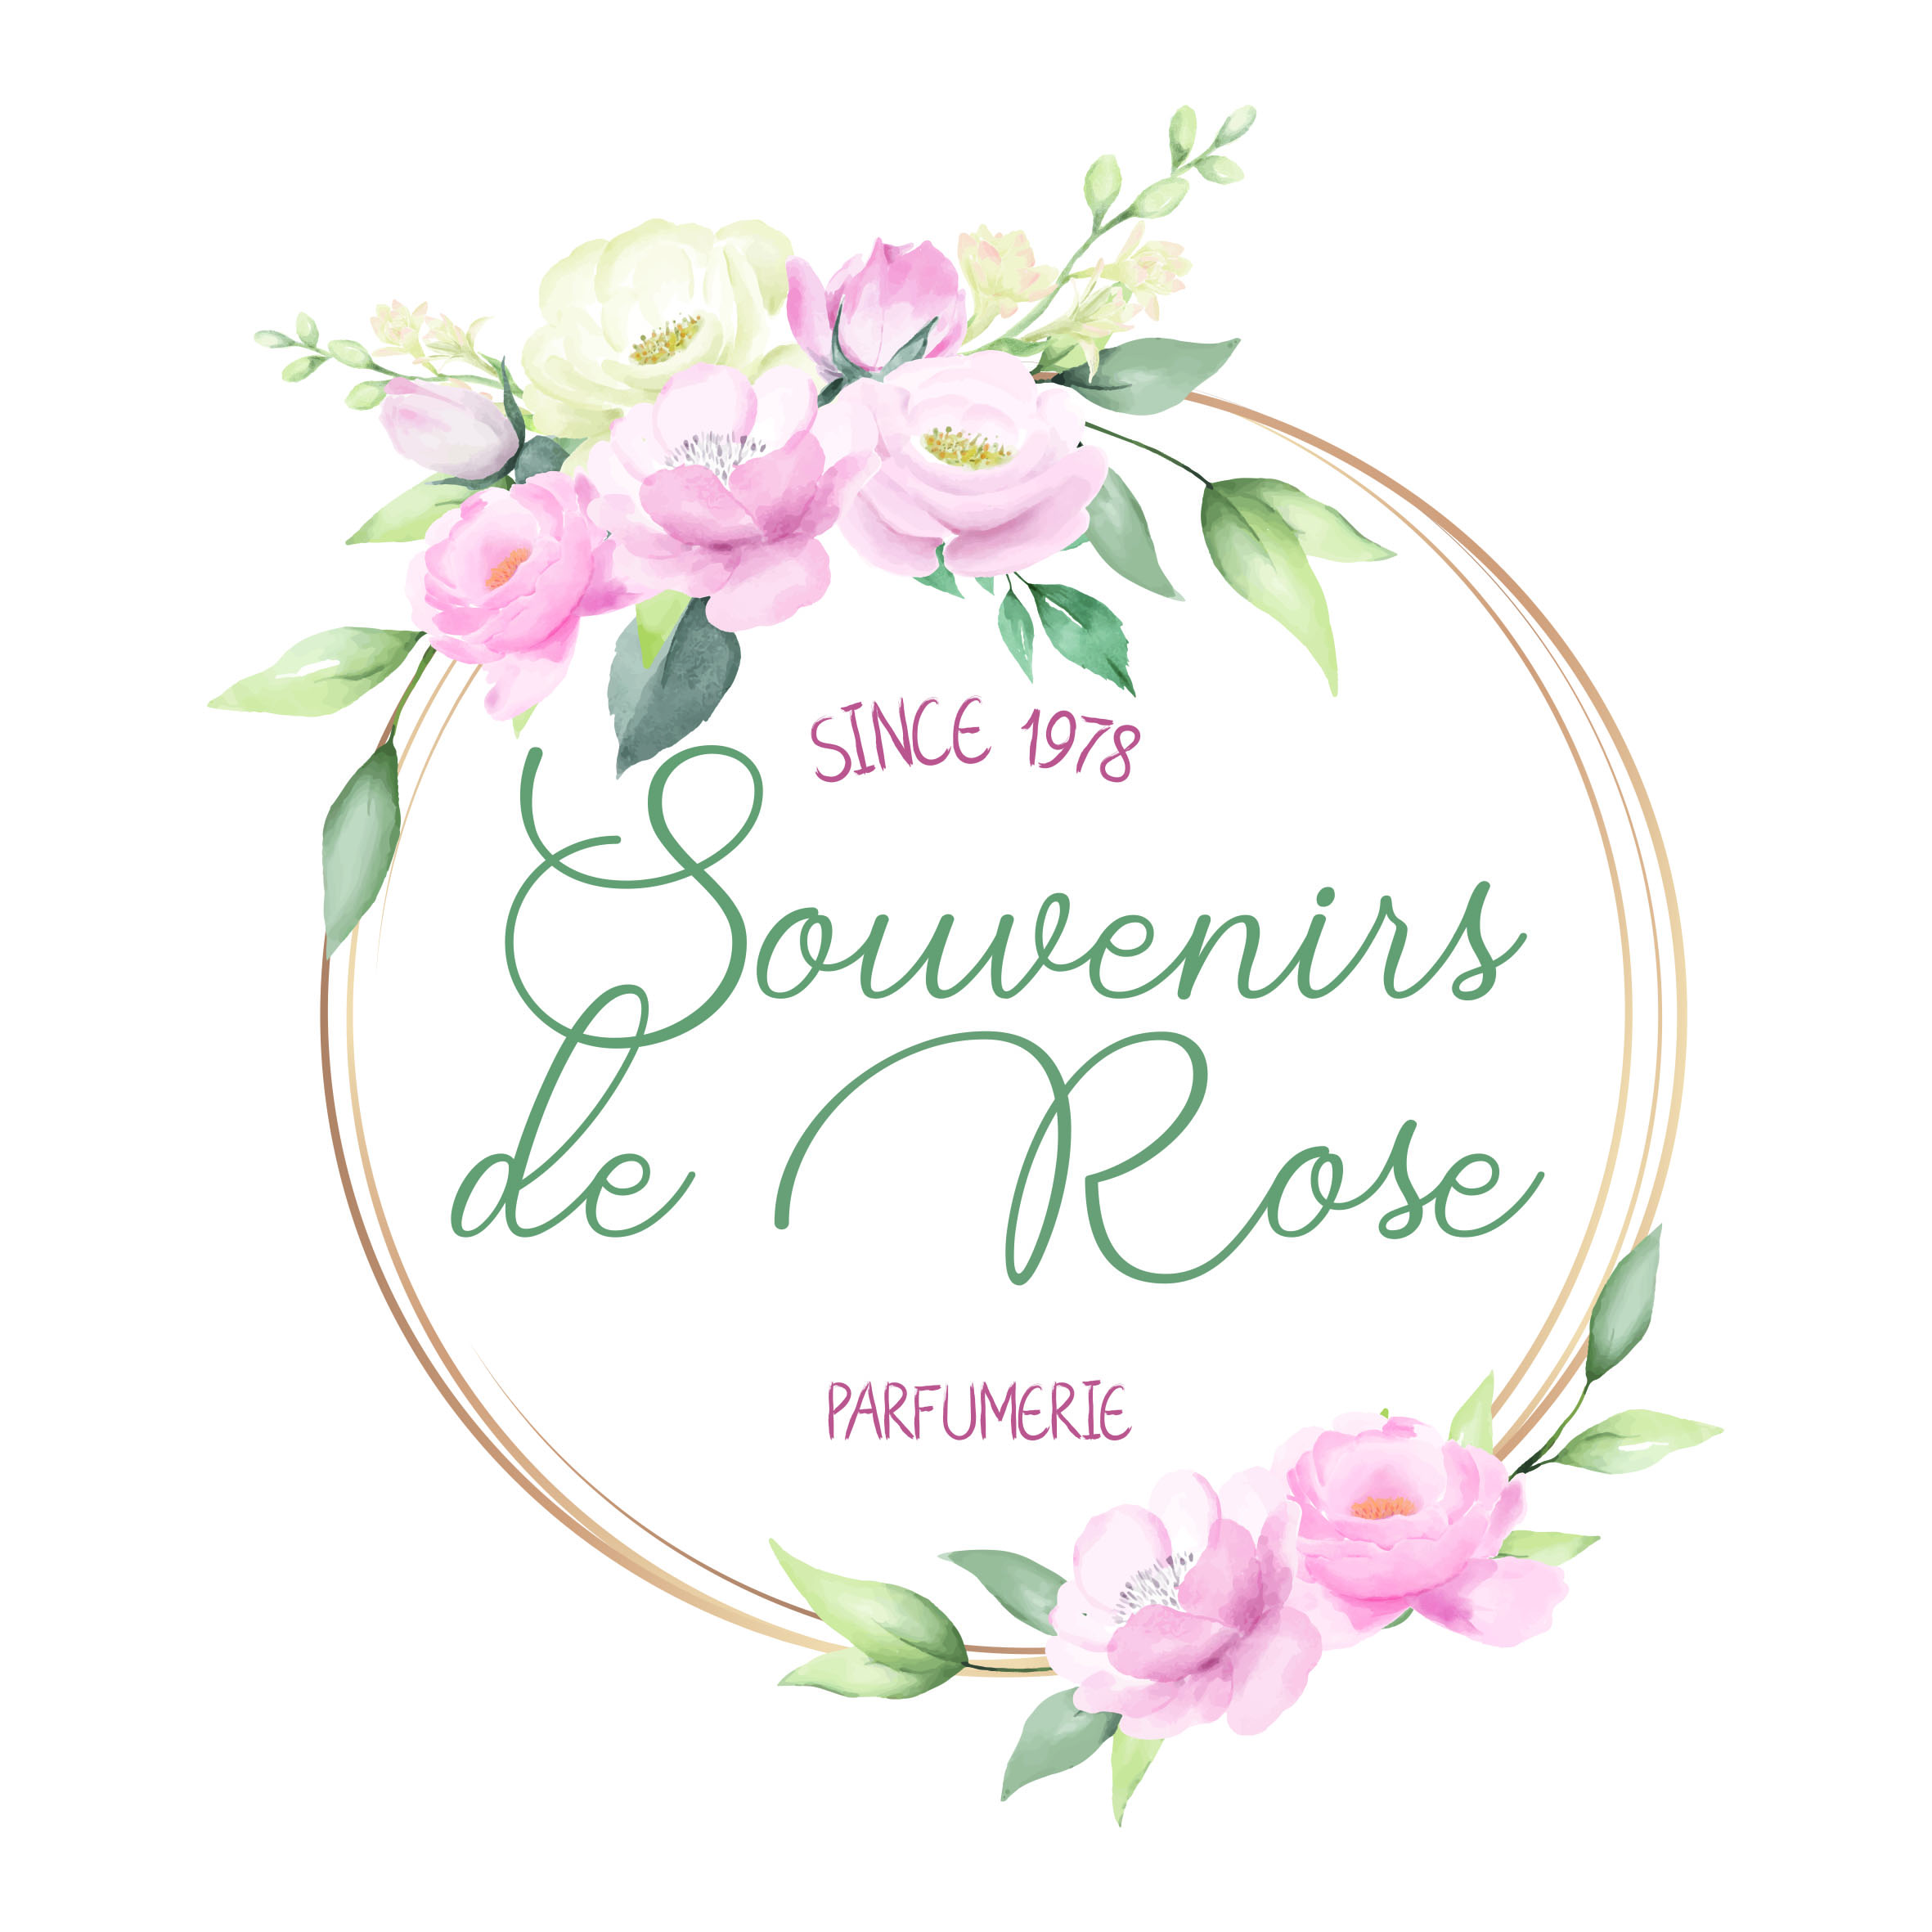 Beroep Beoordeling Aantrekkelijk zijn aantrekkelijk Parfumerie Marie Rose – Webshop